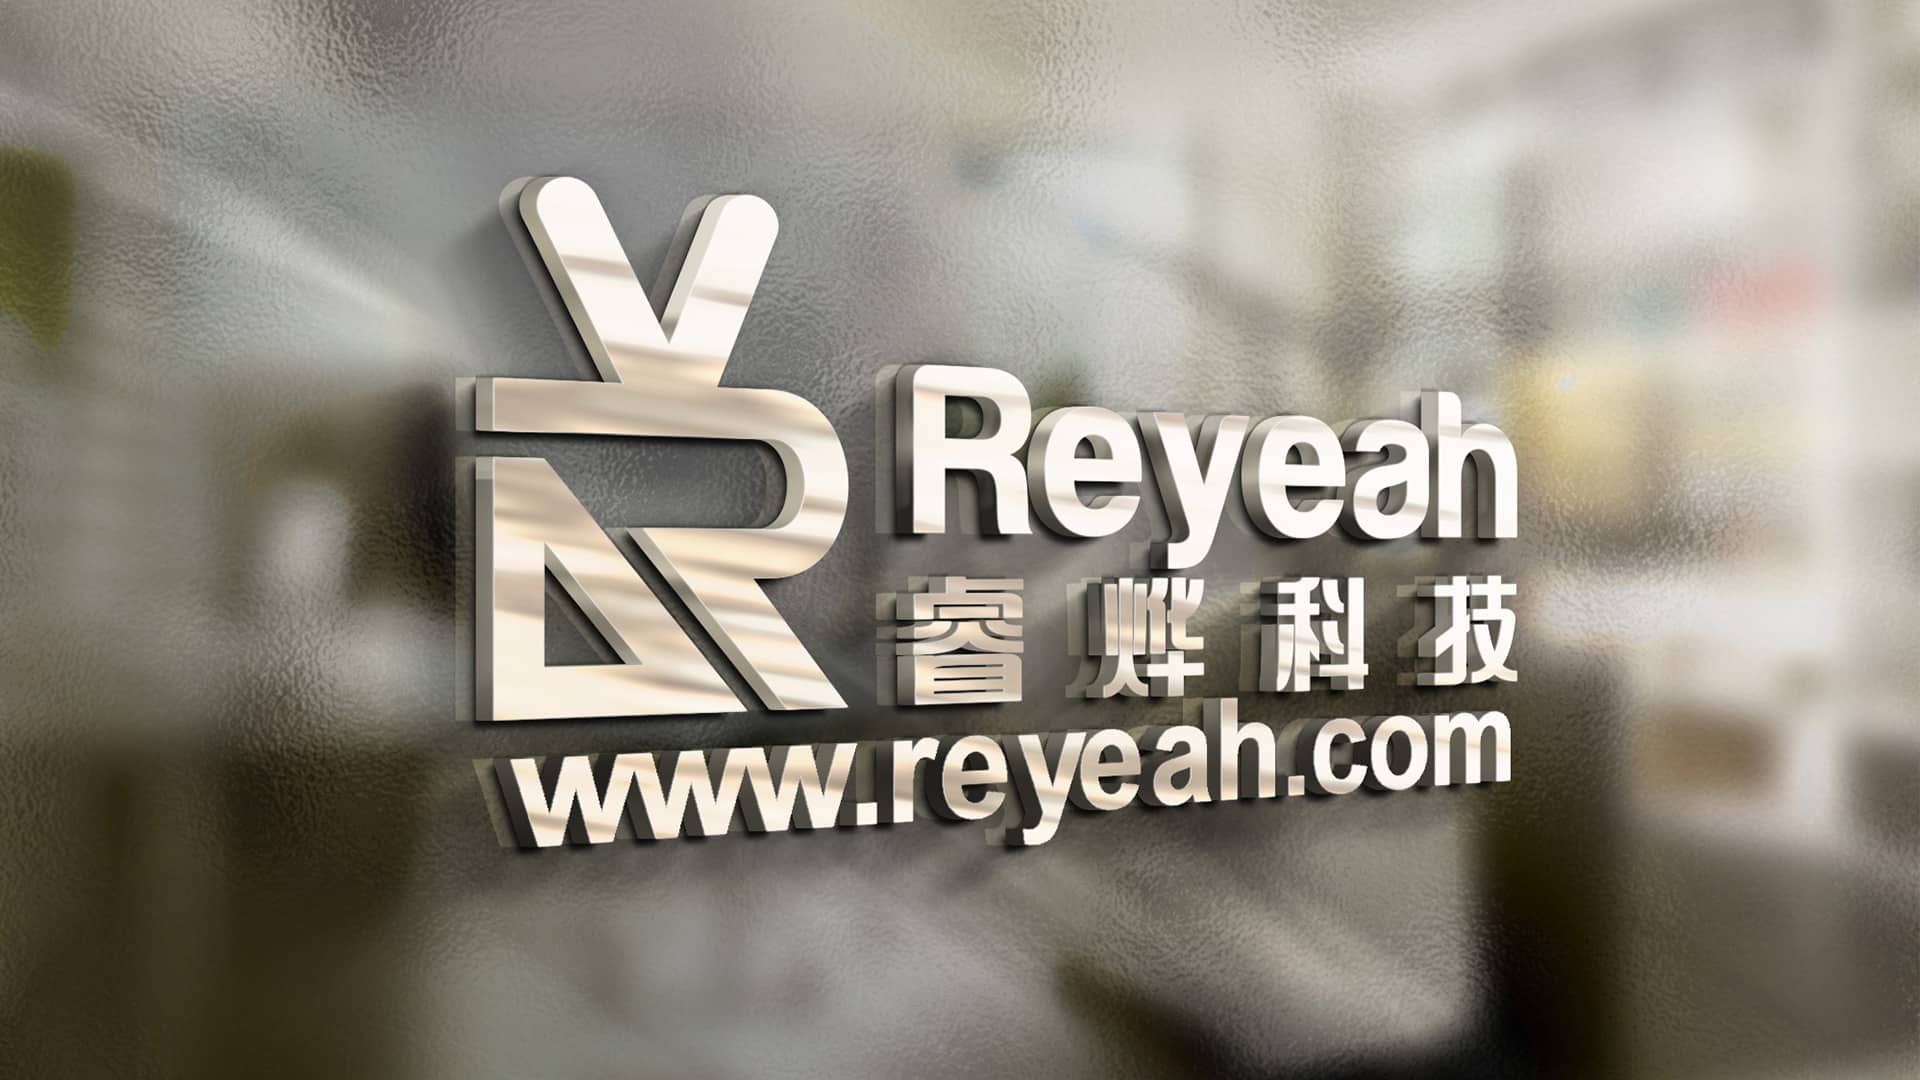 Reyeah.com